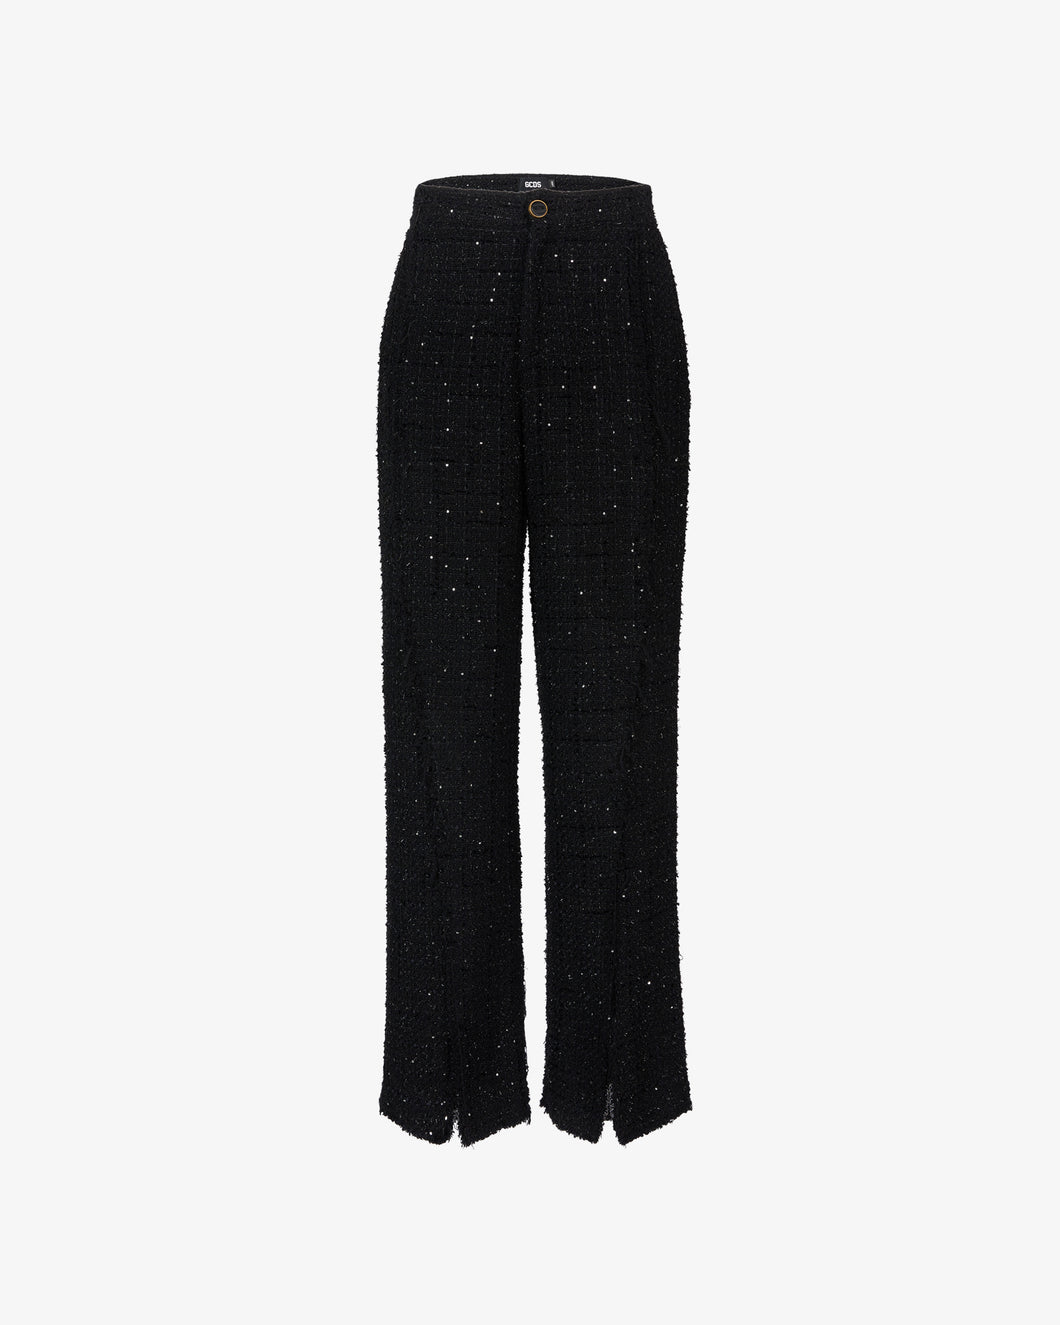 Tweed Trousers | Women Trousers Black | GCDS®